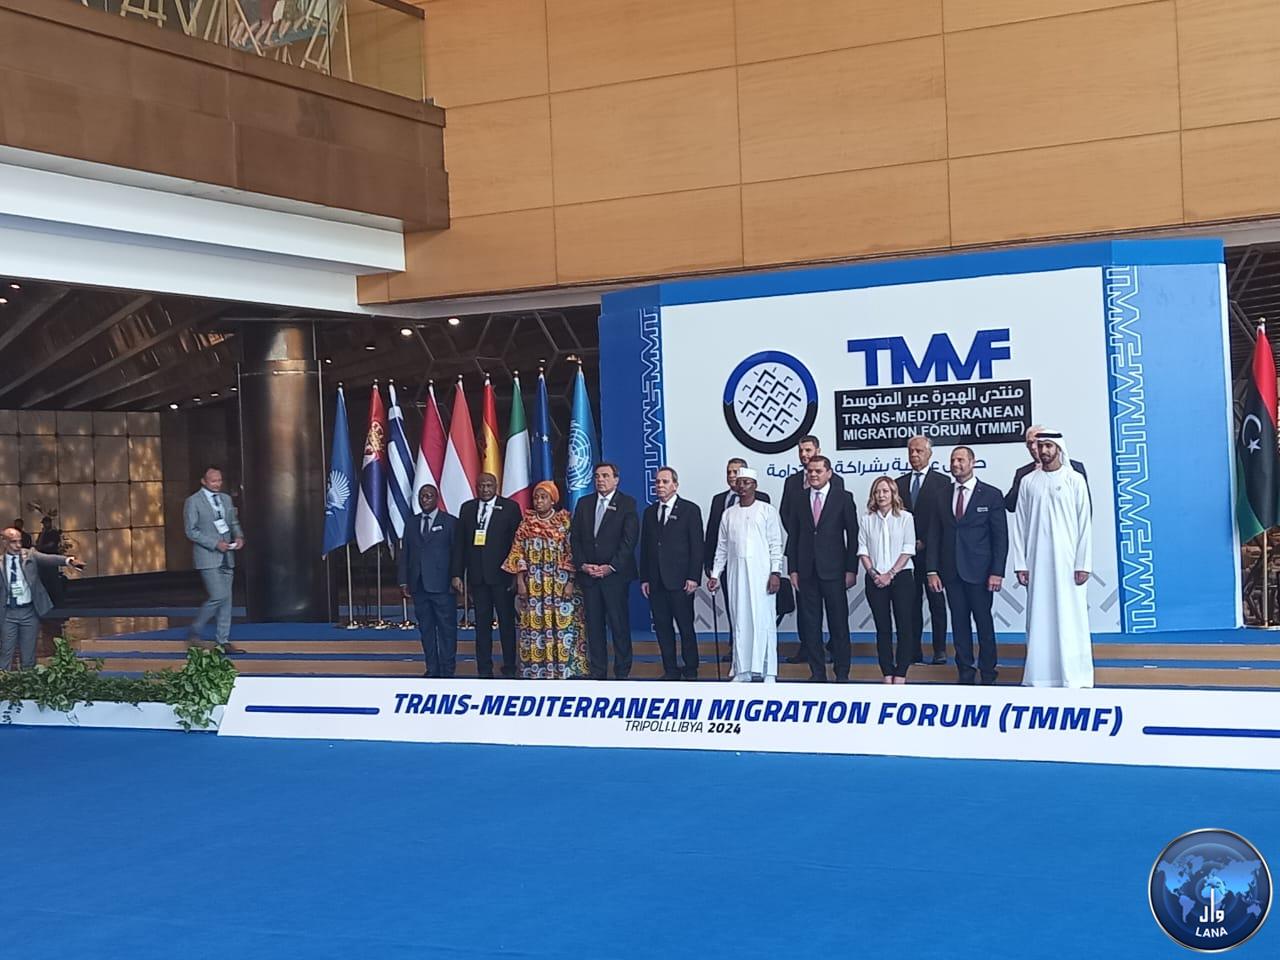 Dabaiba participates in the Trans Mediterranean Migration Forum